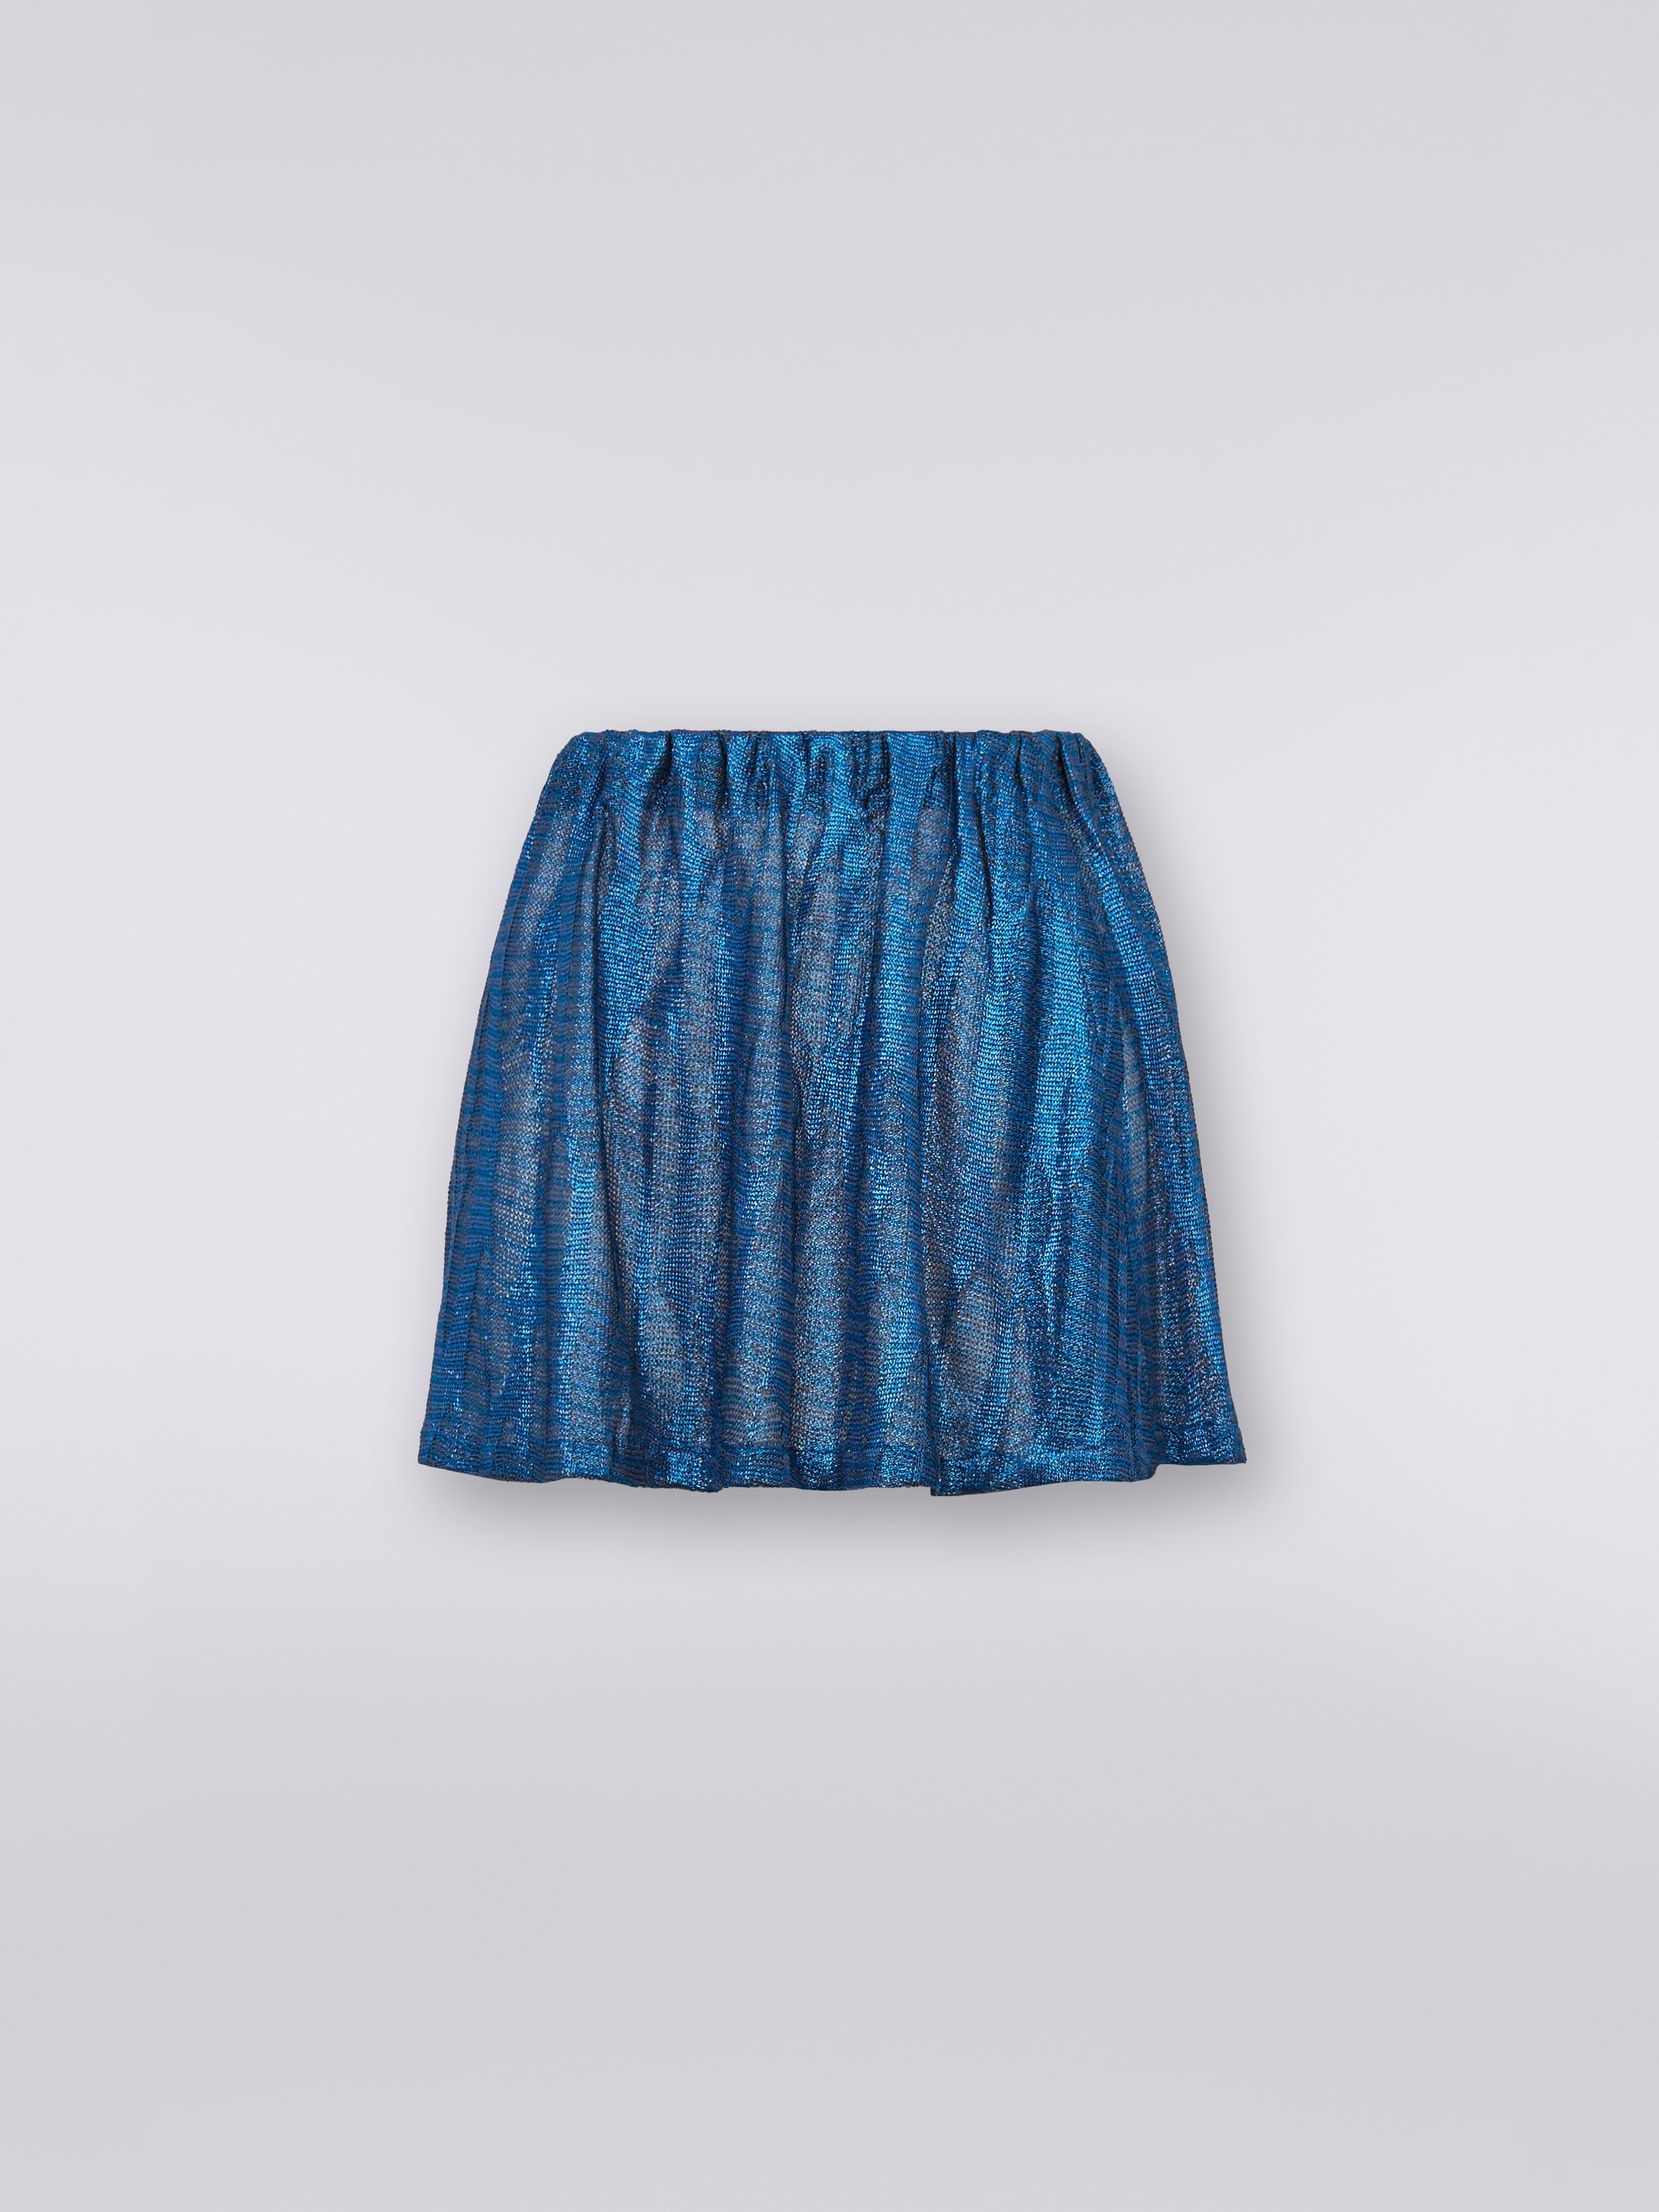 Jacquard viscose knit miniskirt, Blue - 0